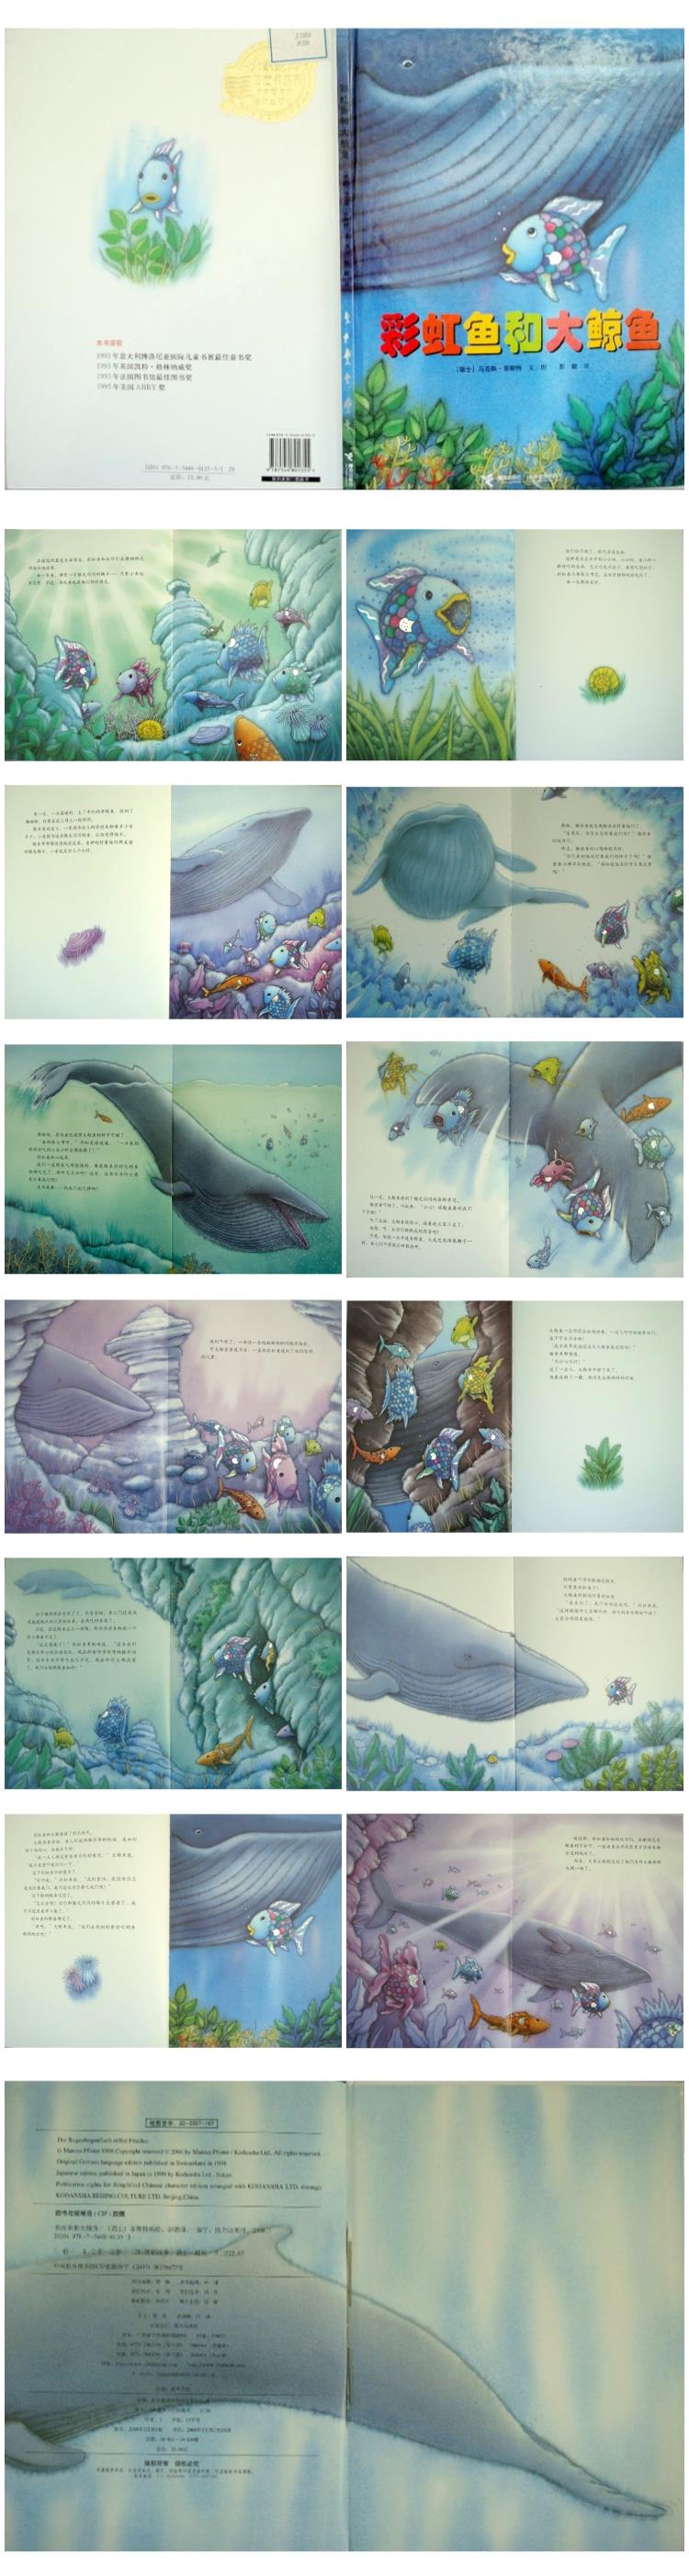 《彩虹鱼和大鲸鱼》童话绘本故事PPT